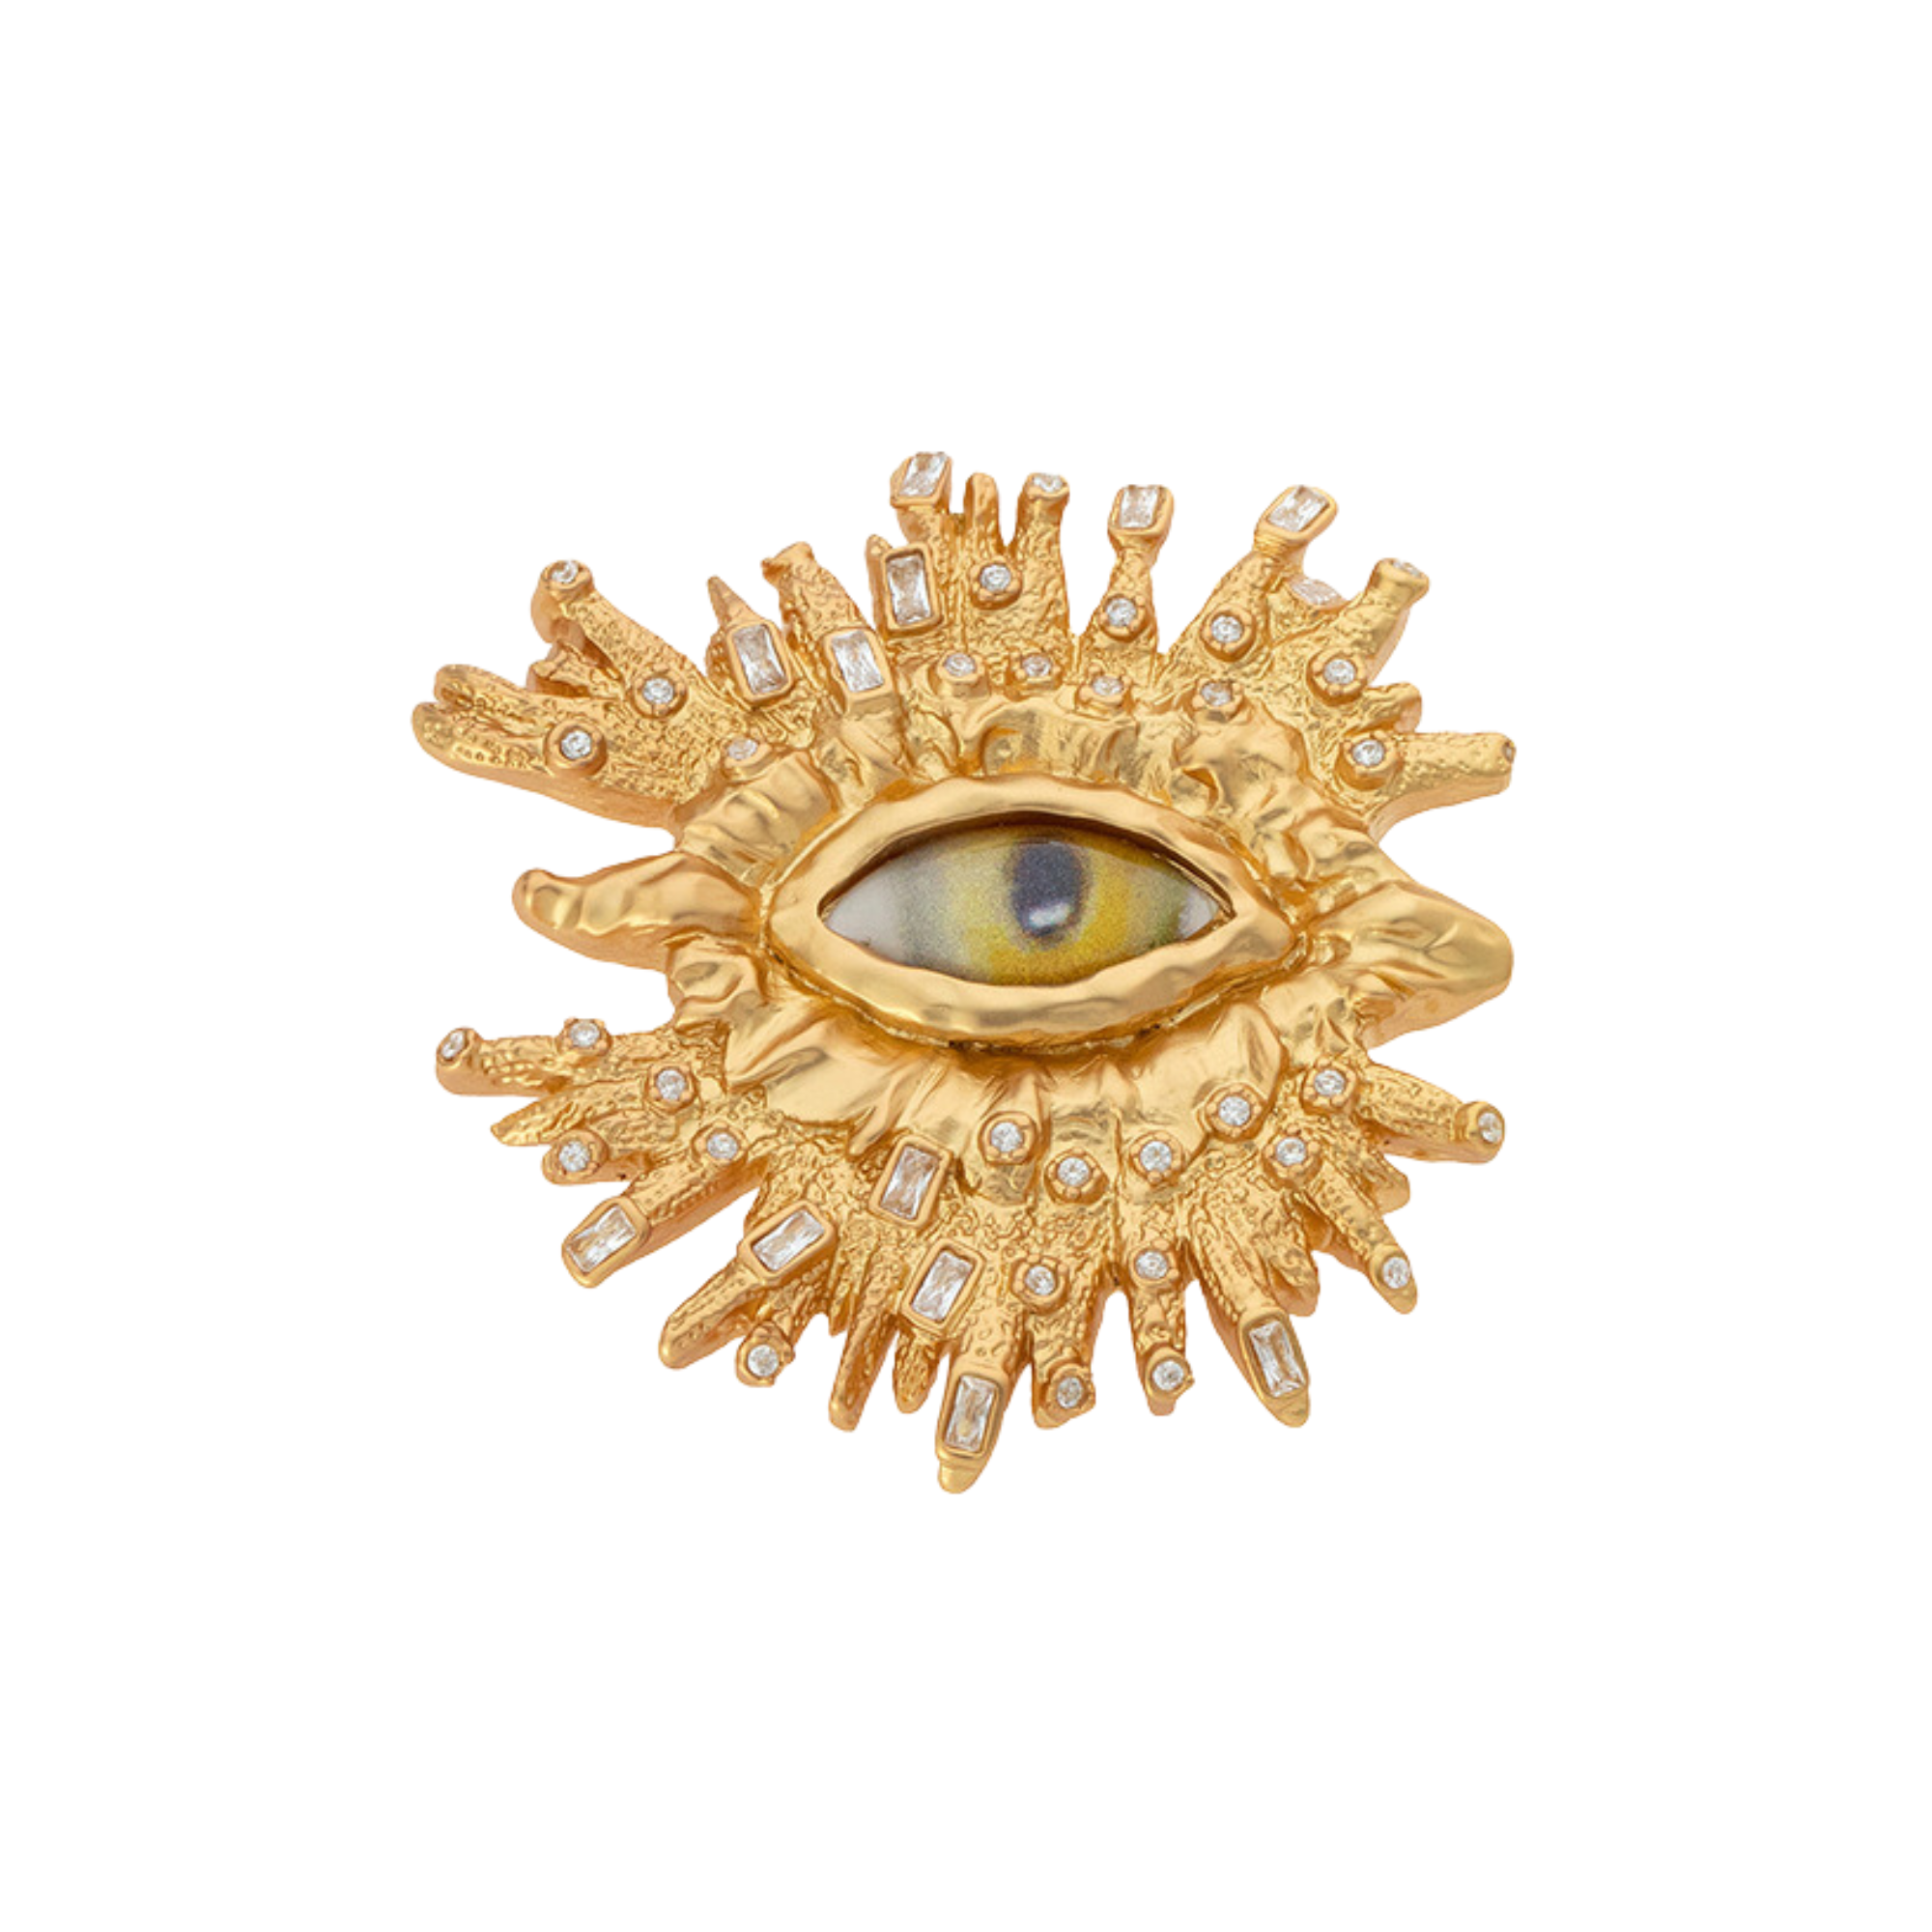 Baroque Eye Oversized Ring - Pre Order: Ships Feb 29